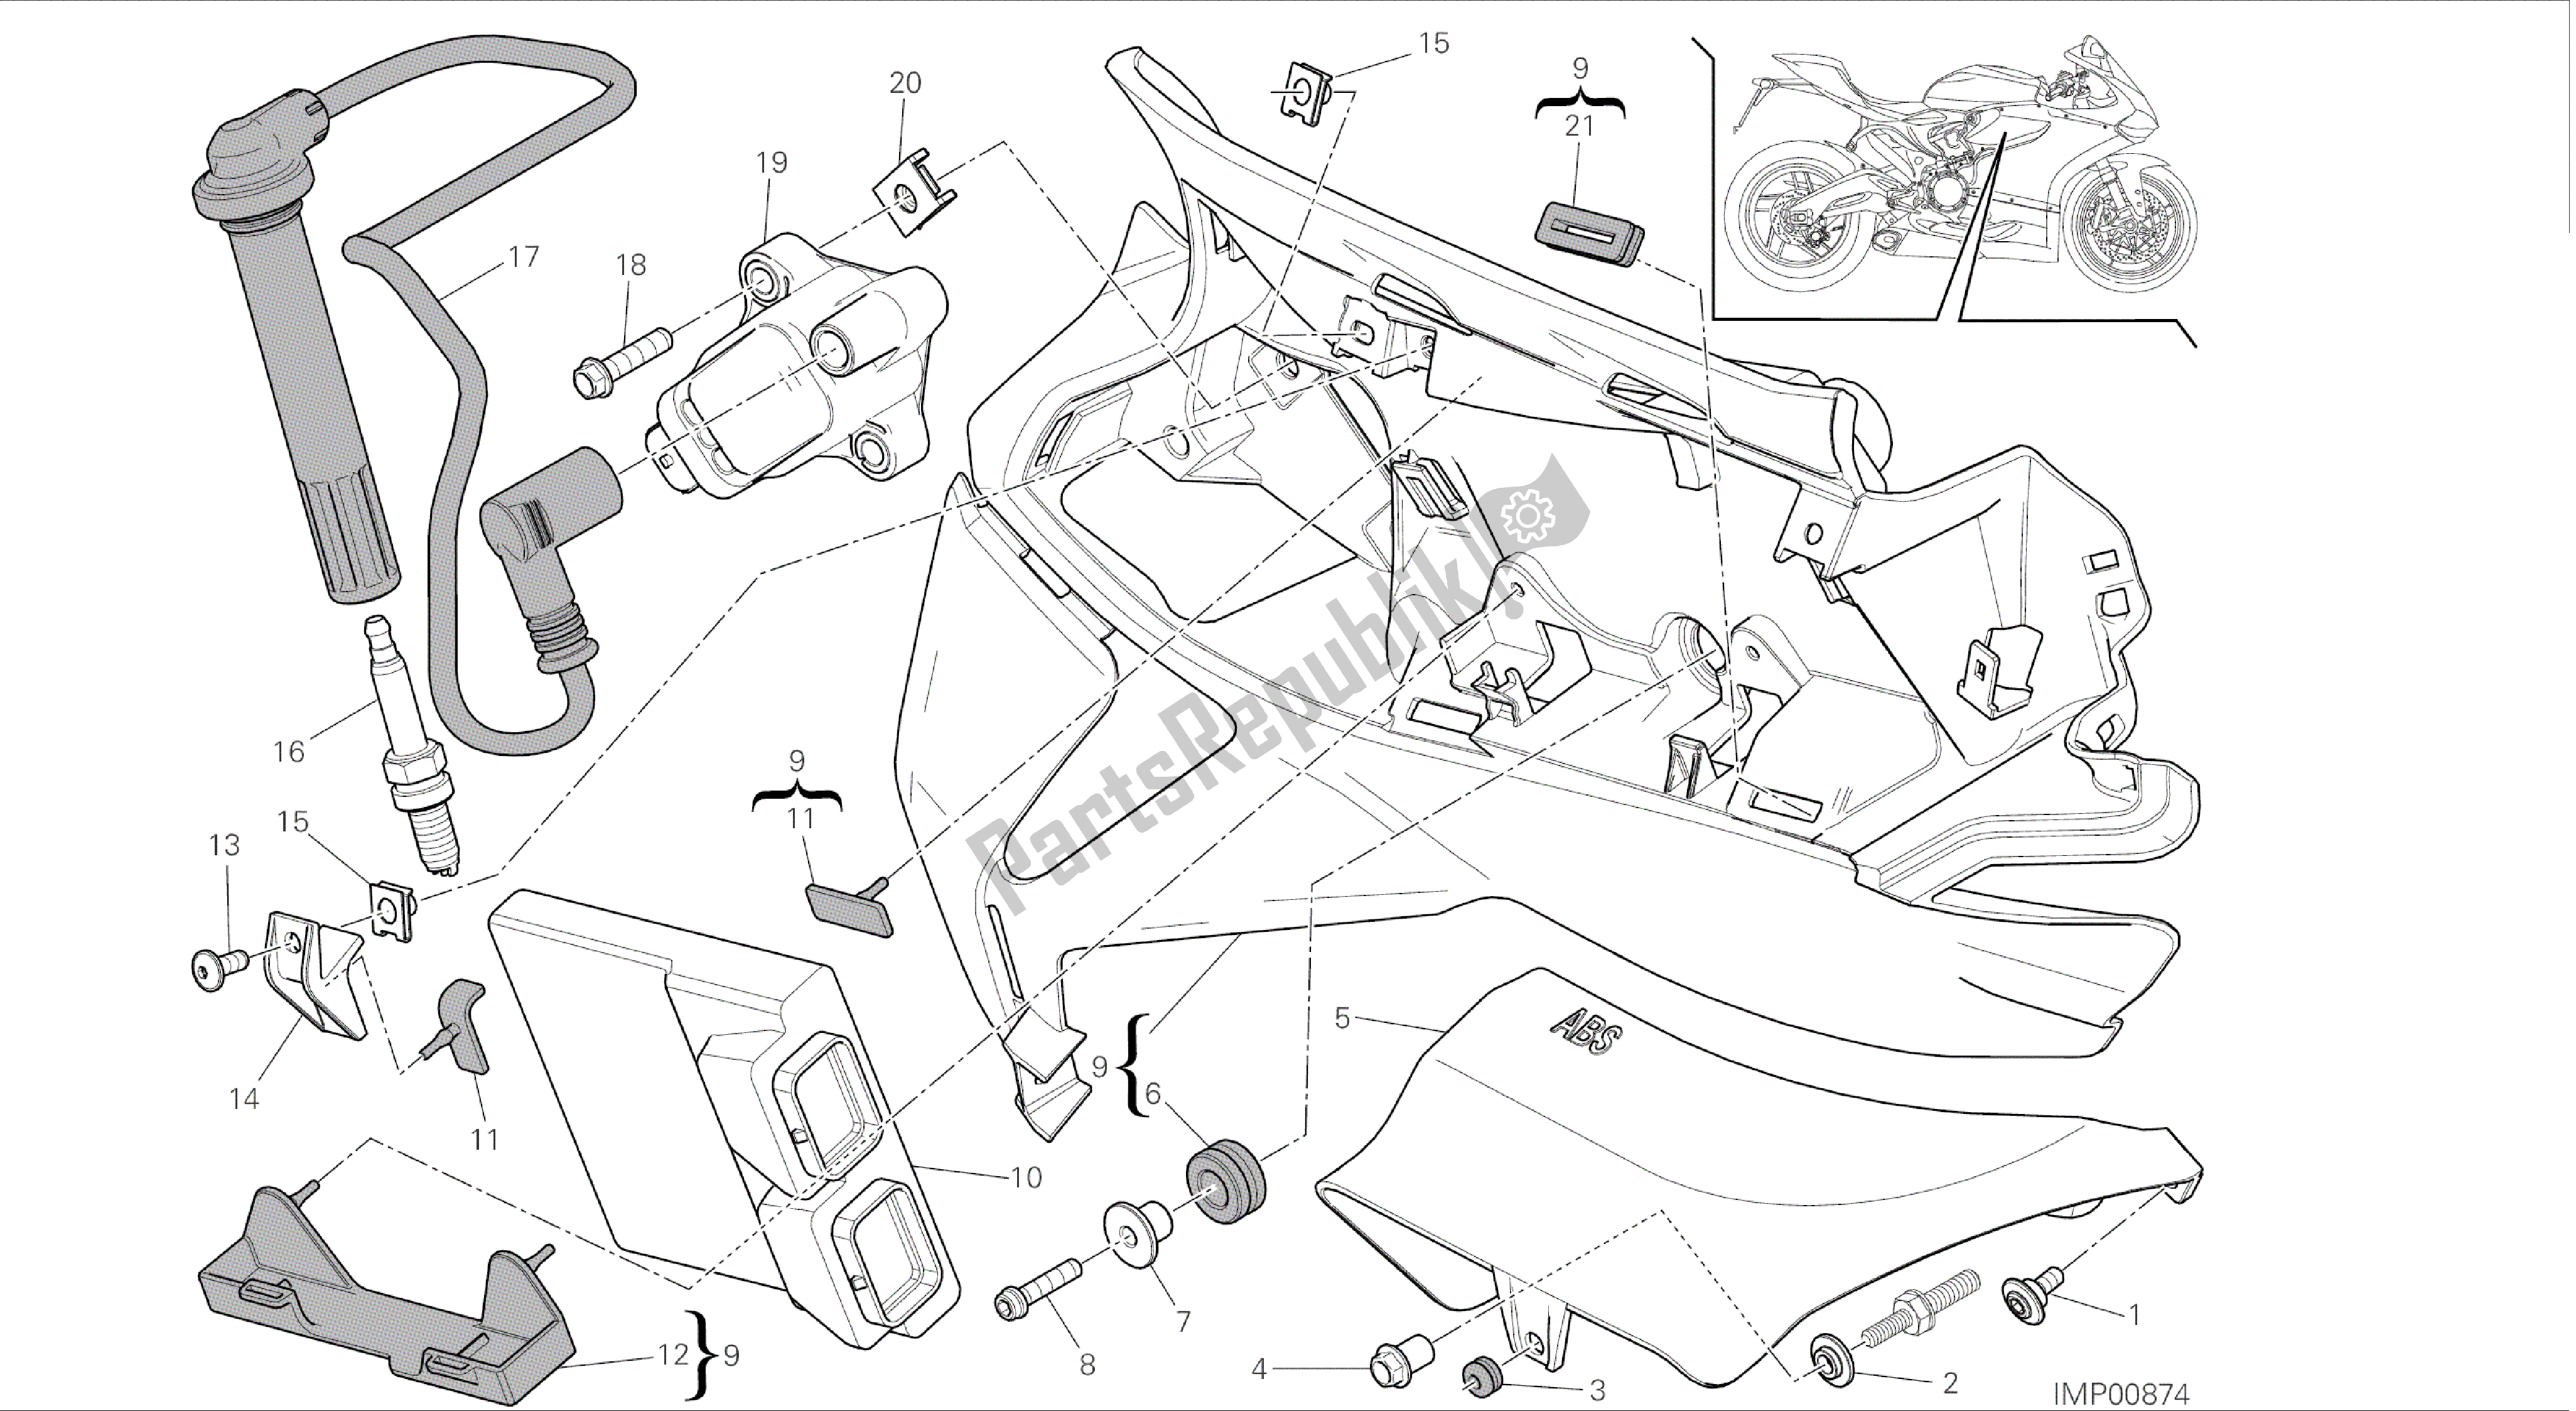 Alle onderdelen voor de Tekening 18b - Impianto Elettrico Destro [mod: 899abs; Xst: Aus, Eur, Fra, Jap, Twn] Groep Elektrisch van de Ducati Panigale 899 2014